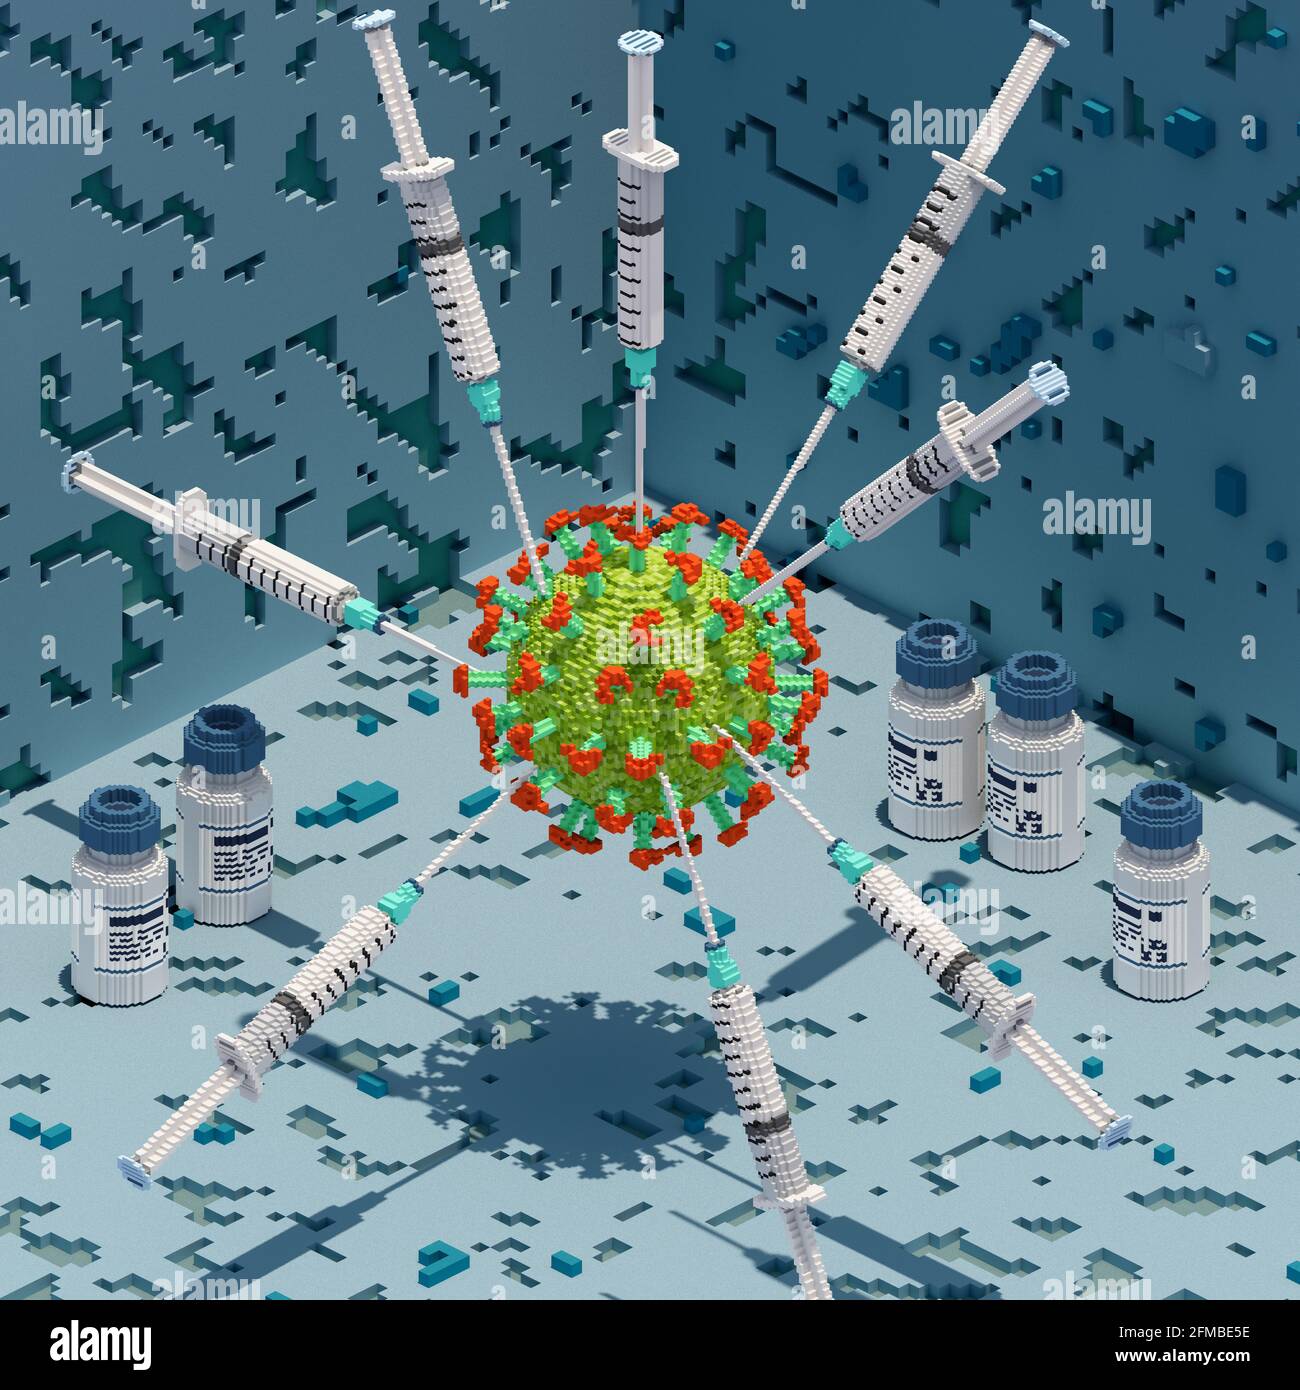 Virus corona attaccato in forma di stella da siringhe di vaccino in stile grafico voxel, vista isometrica Foto Stock